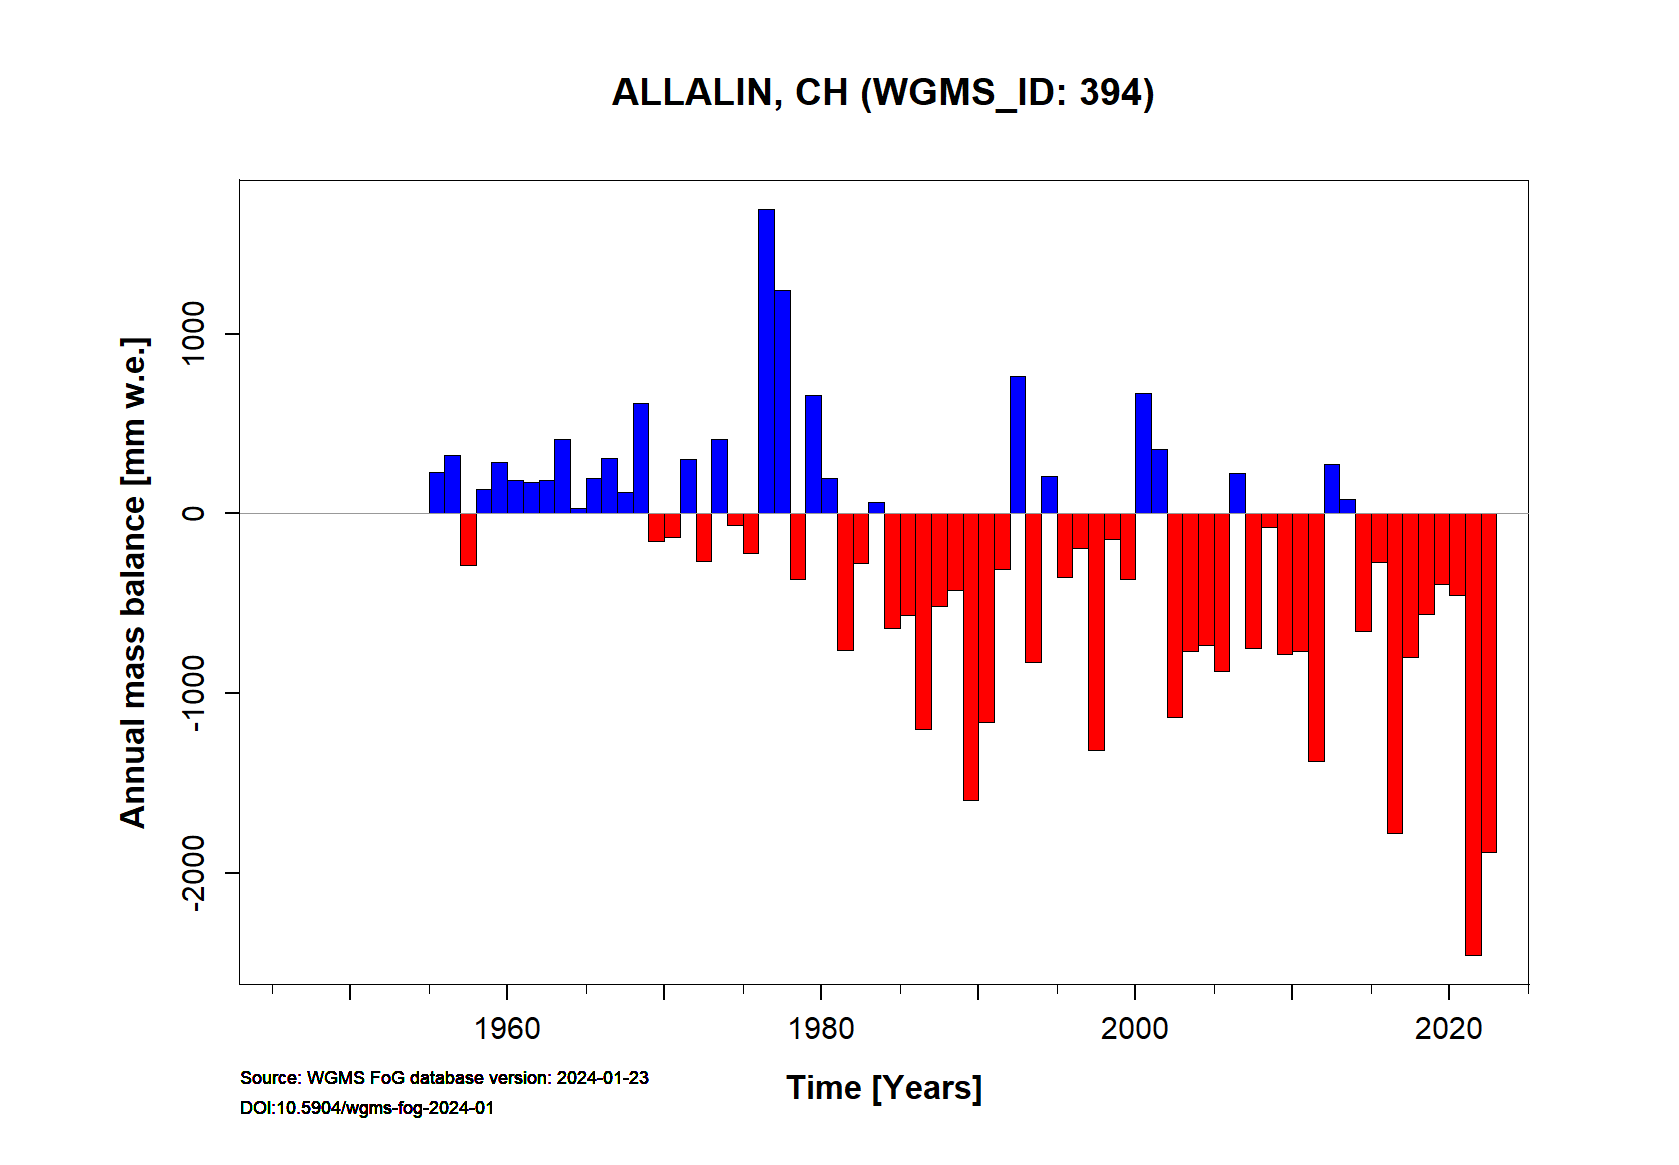 Allalin glacier Annual Mass Balance (WGMS, 2017)